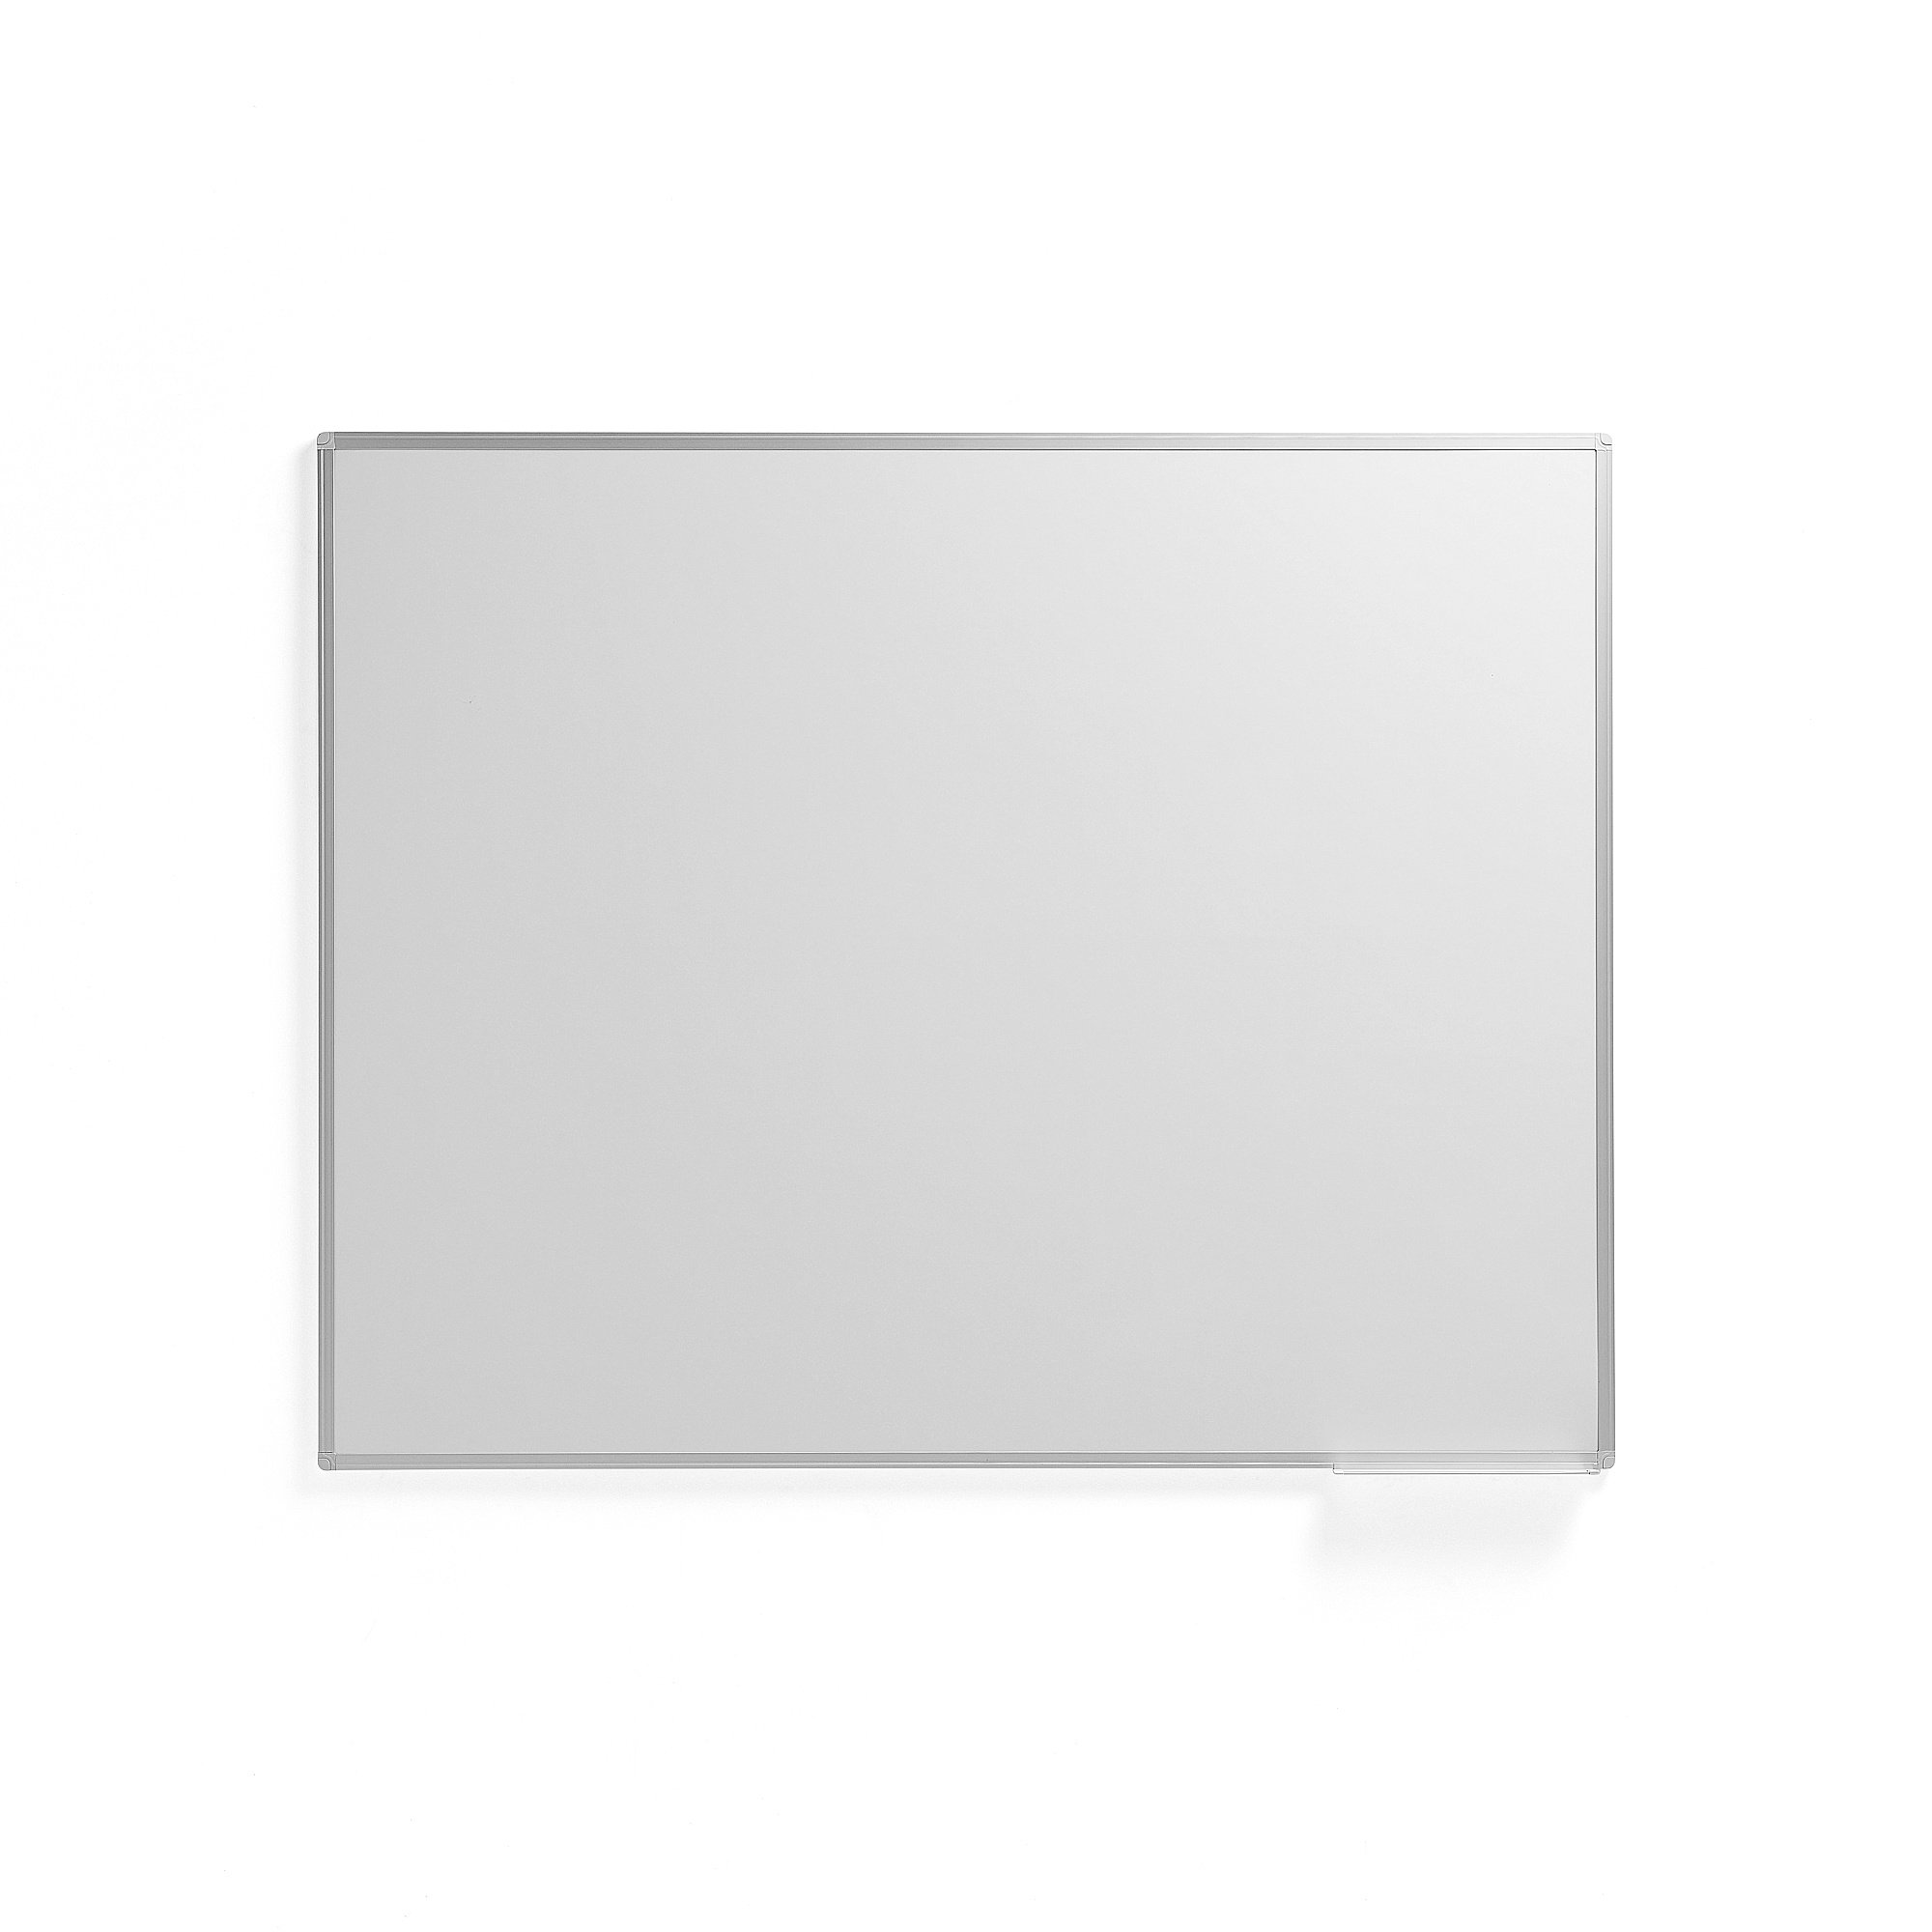 E-shop Biela tabuľa JULIE, 1500x1200 mm